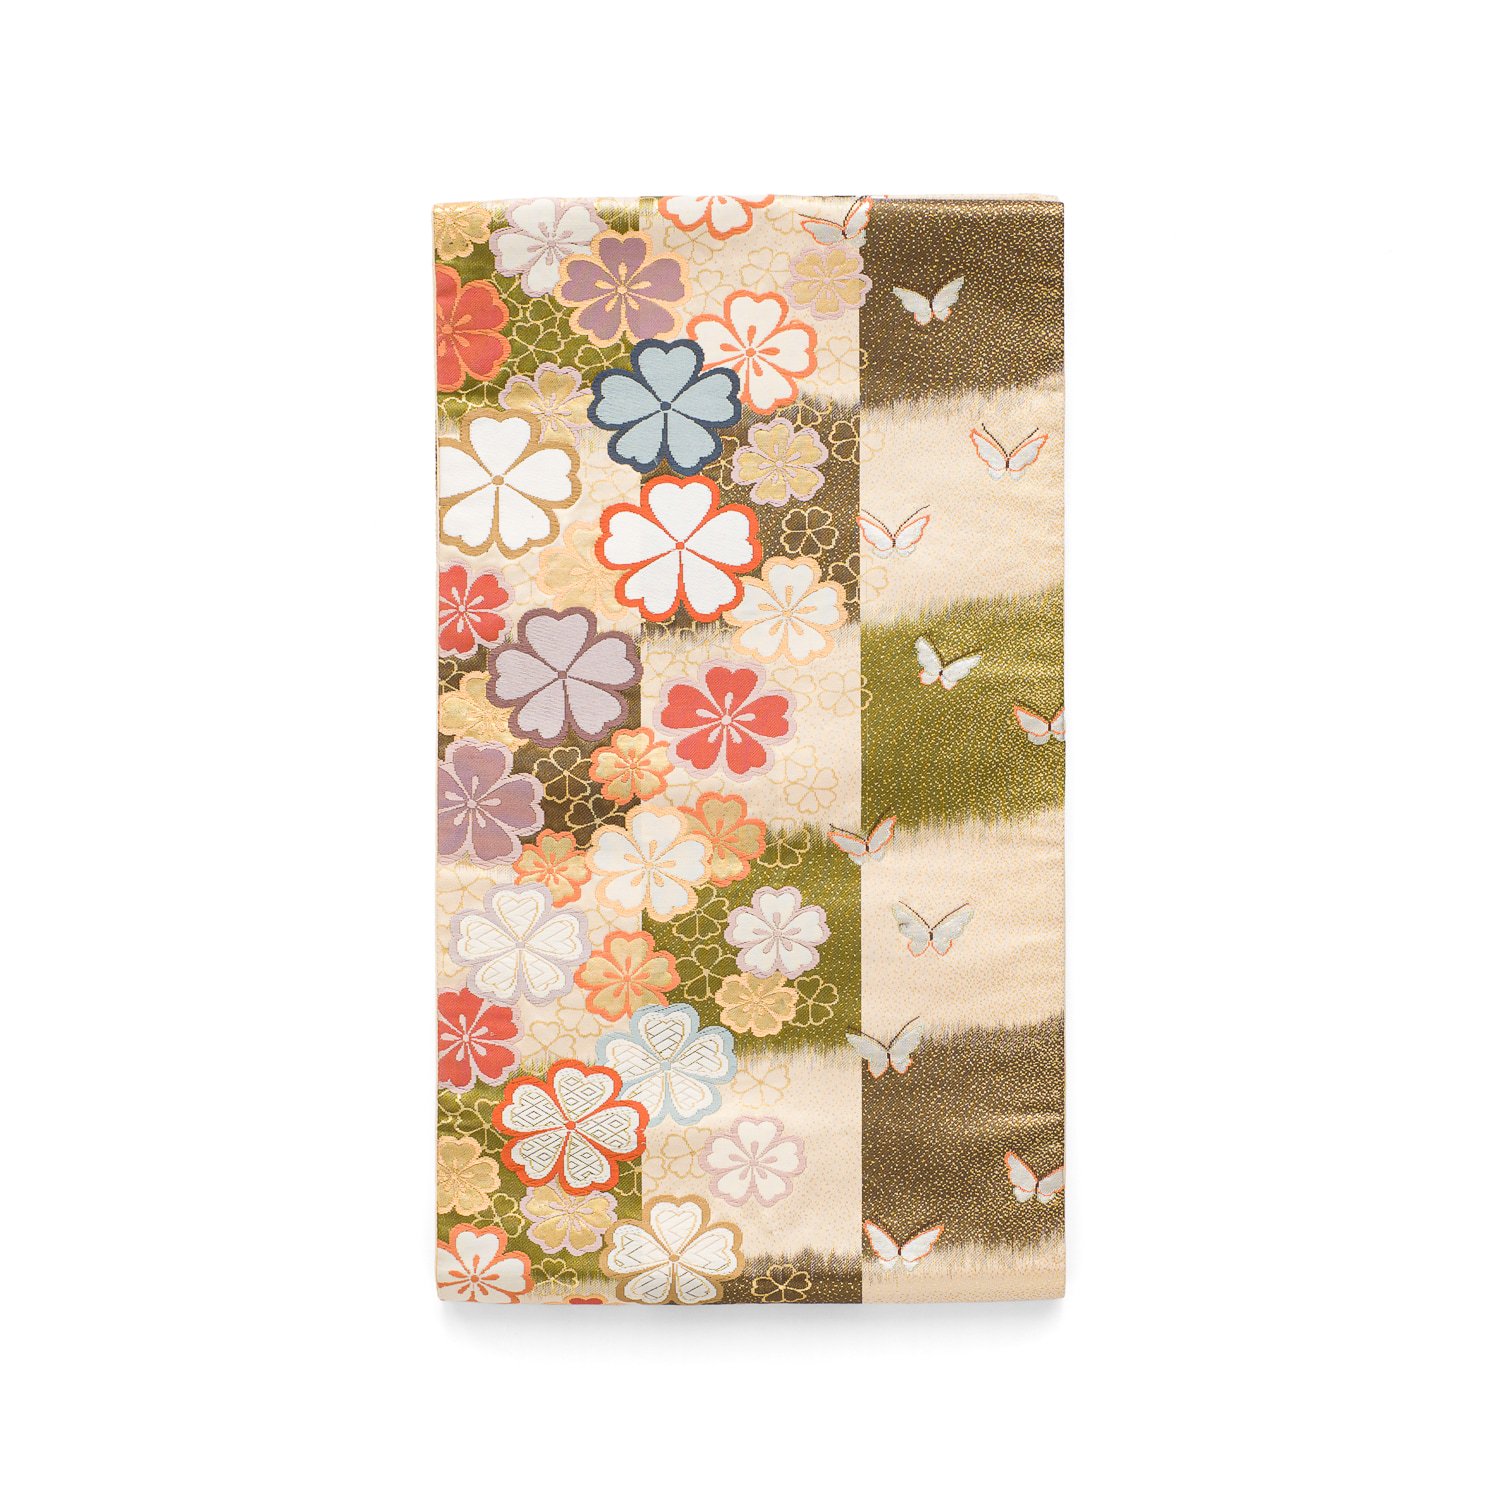 袋帯●市松に桜と蝶々